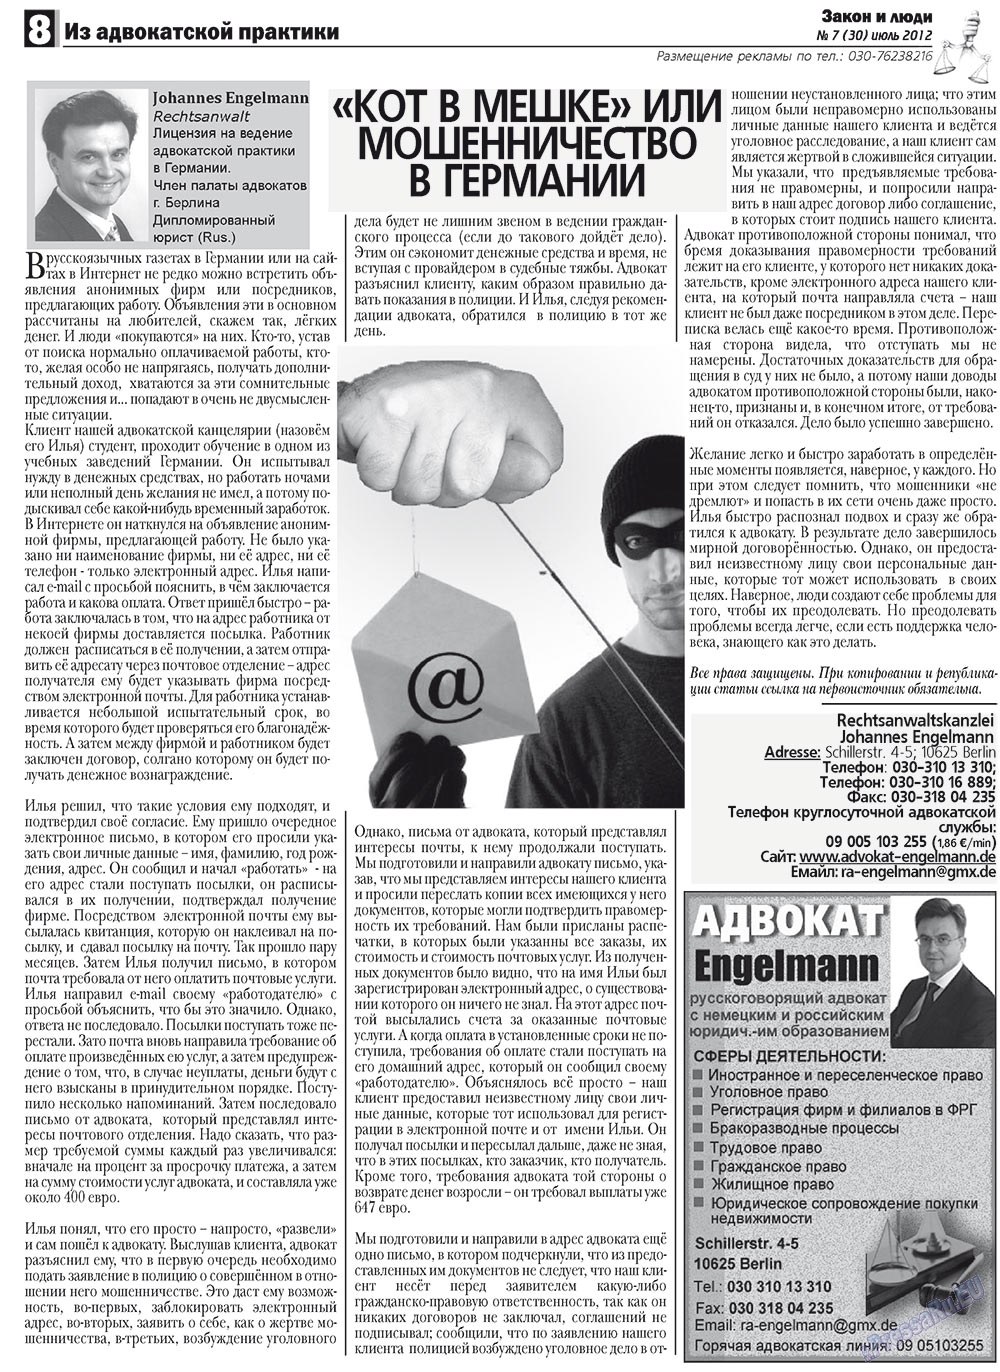 Закон и люди, газета. 2012 №7 стр.8